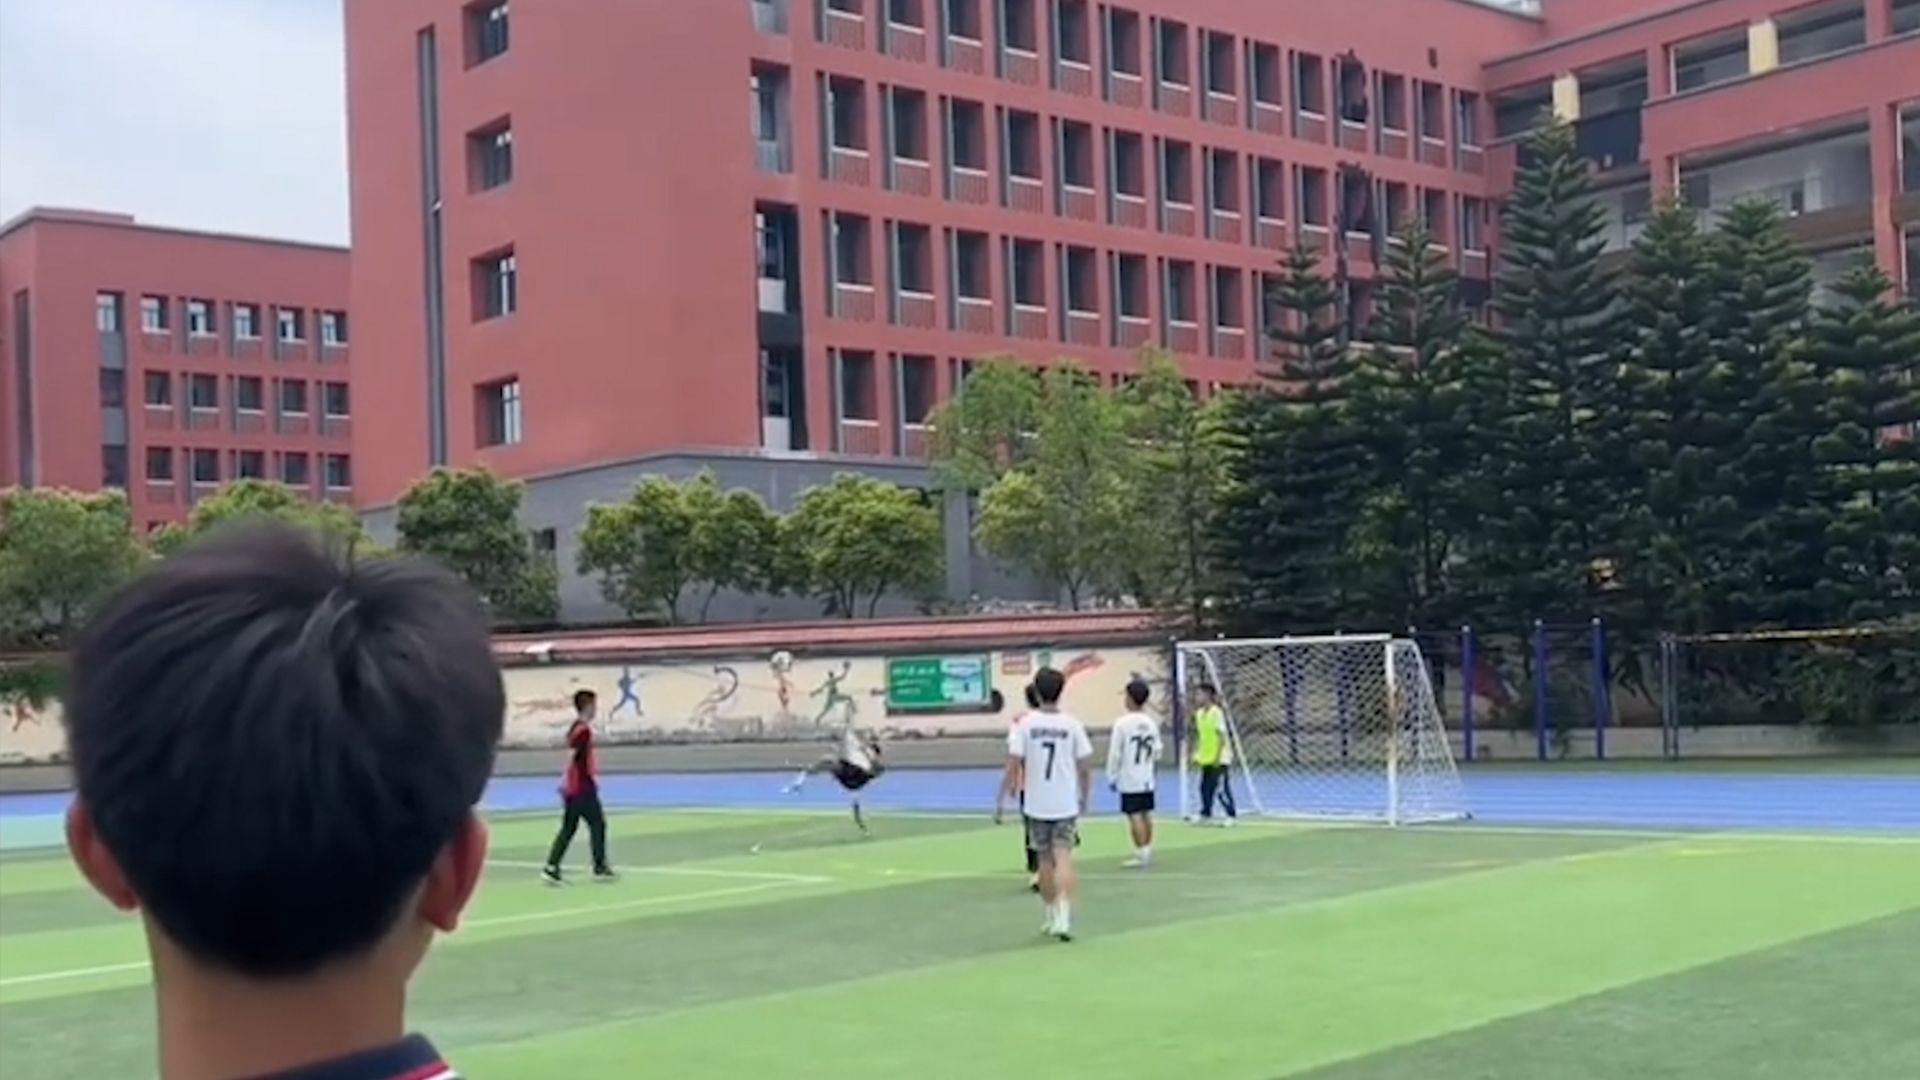 简直帅炸了！重庆双桥中学一学生操场踢球倒钩破门，全场齐声惊呼